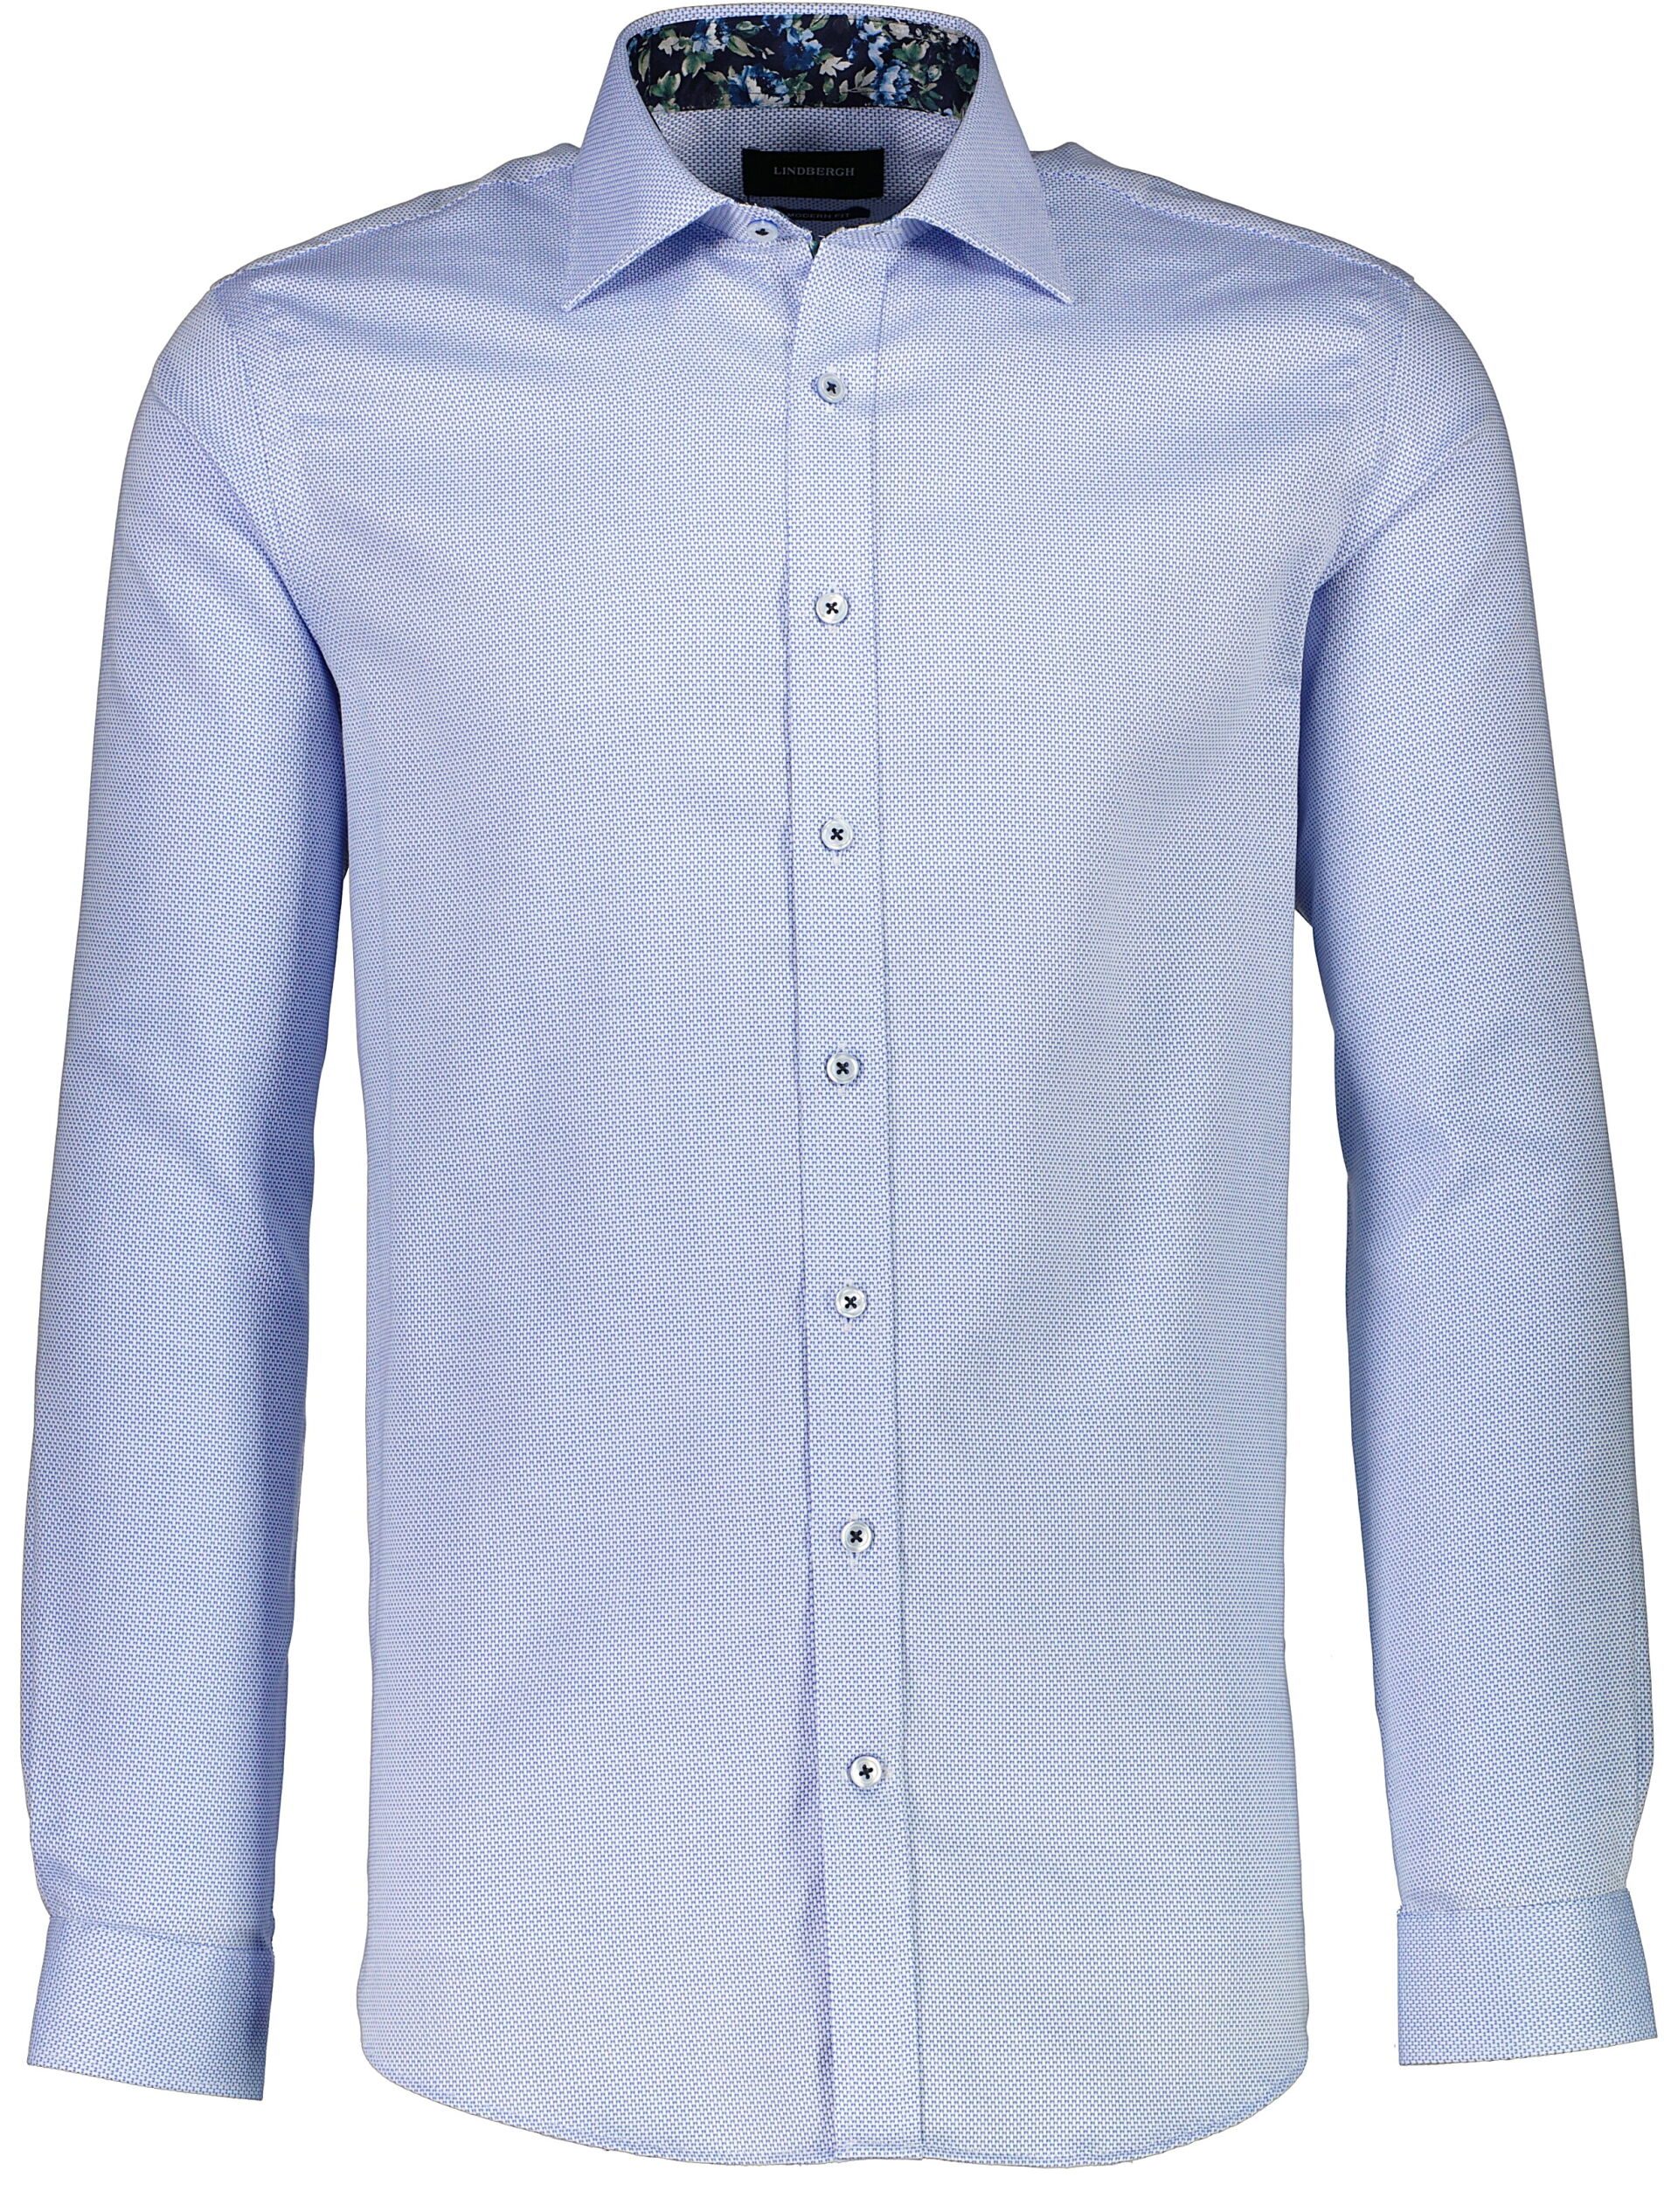 Business casual shirt Business casual shirt Blue 30-242154